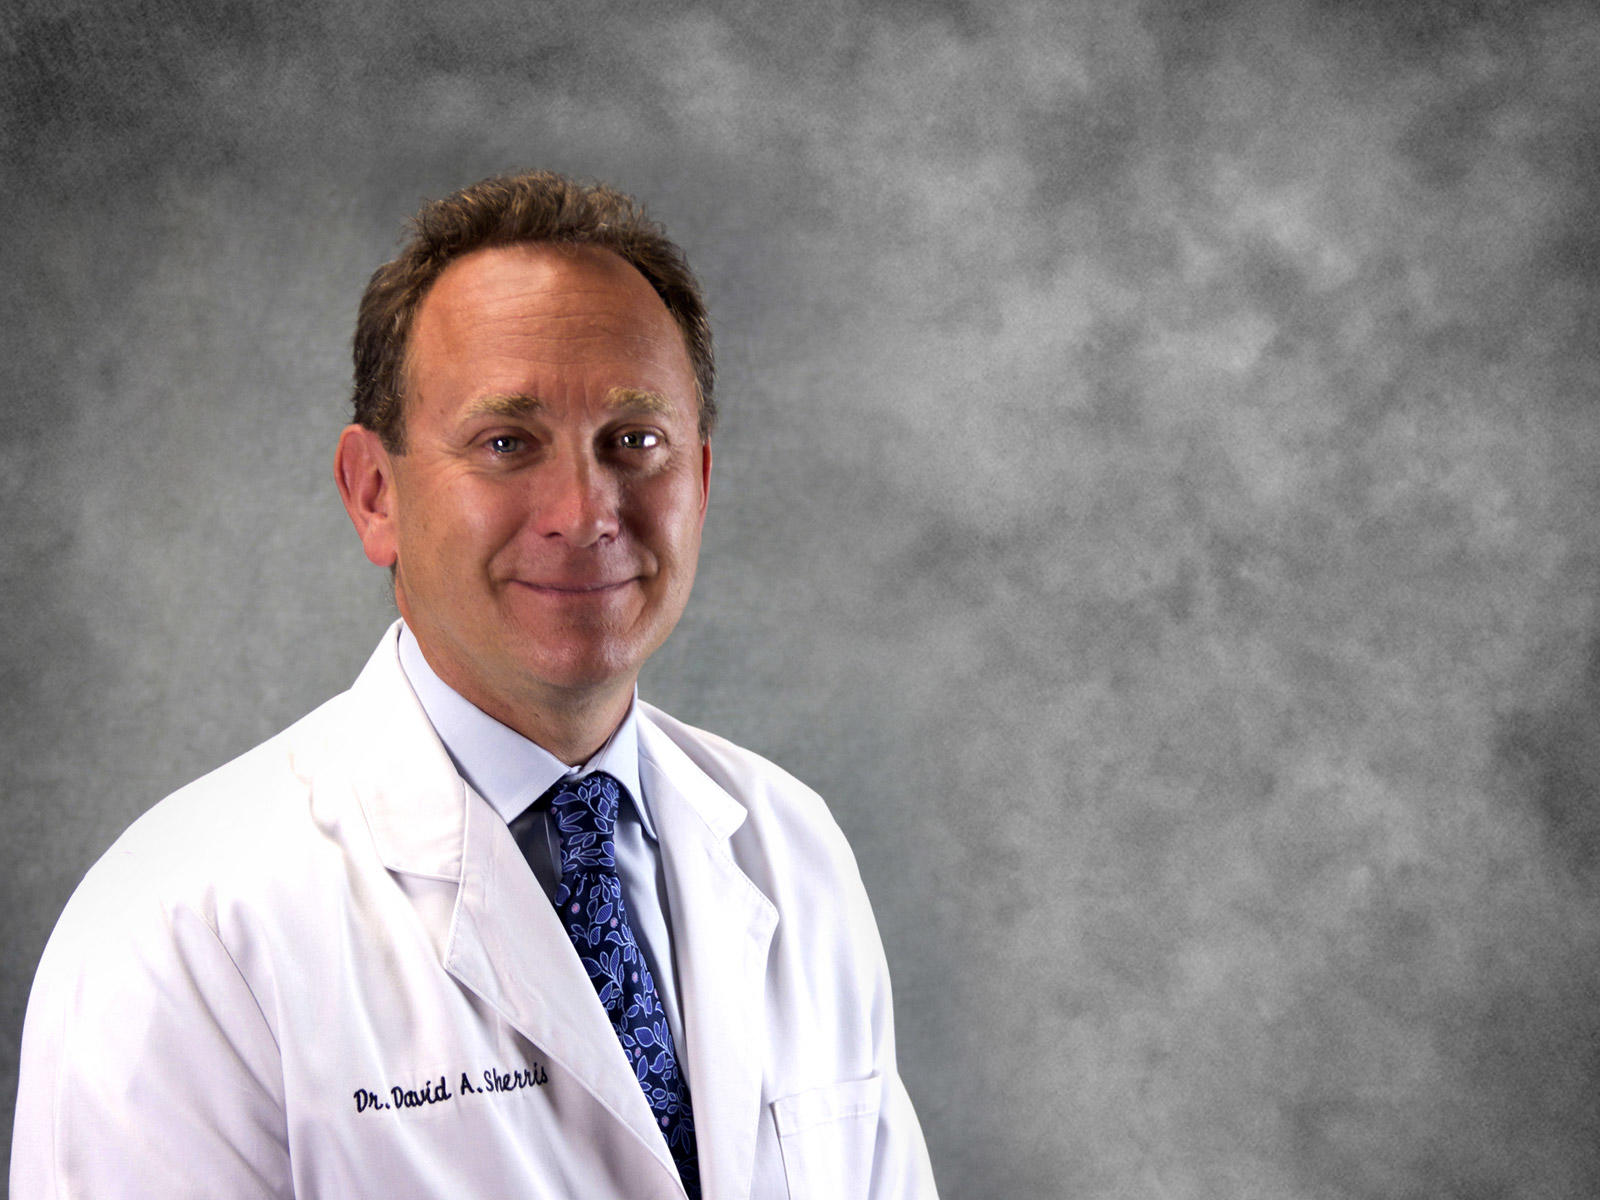 David Sherris, MD of Clinic of Facial Plastic Surgery | Buffalo, NY